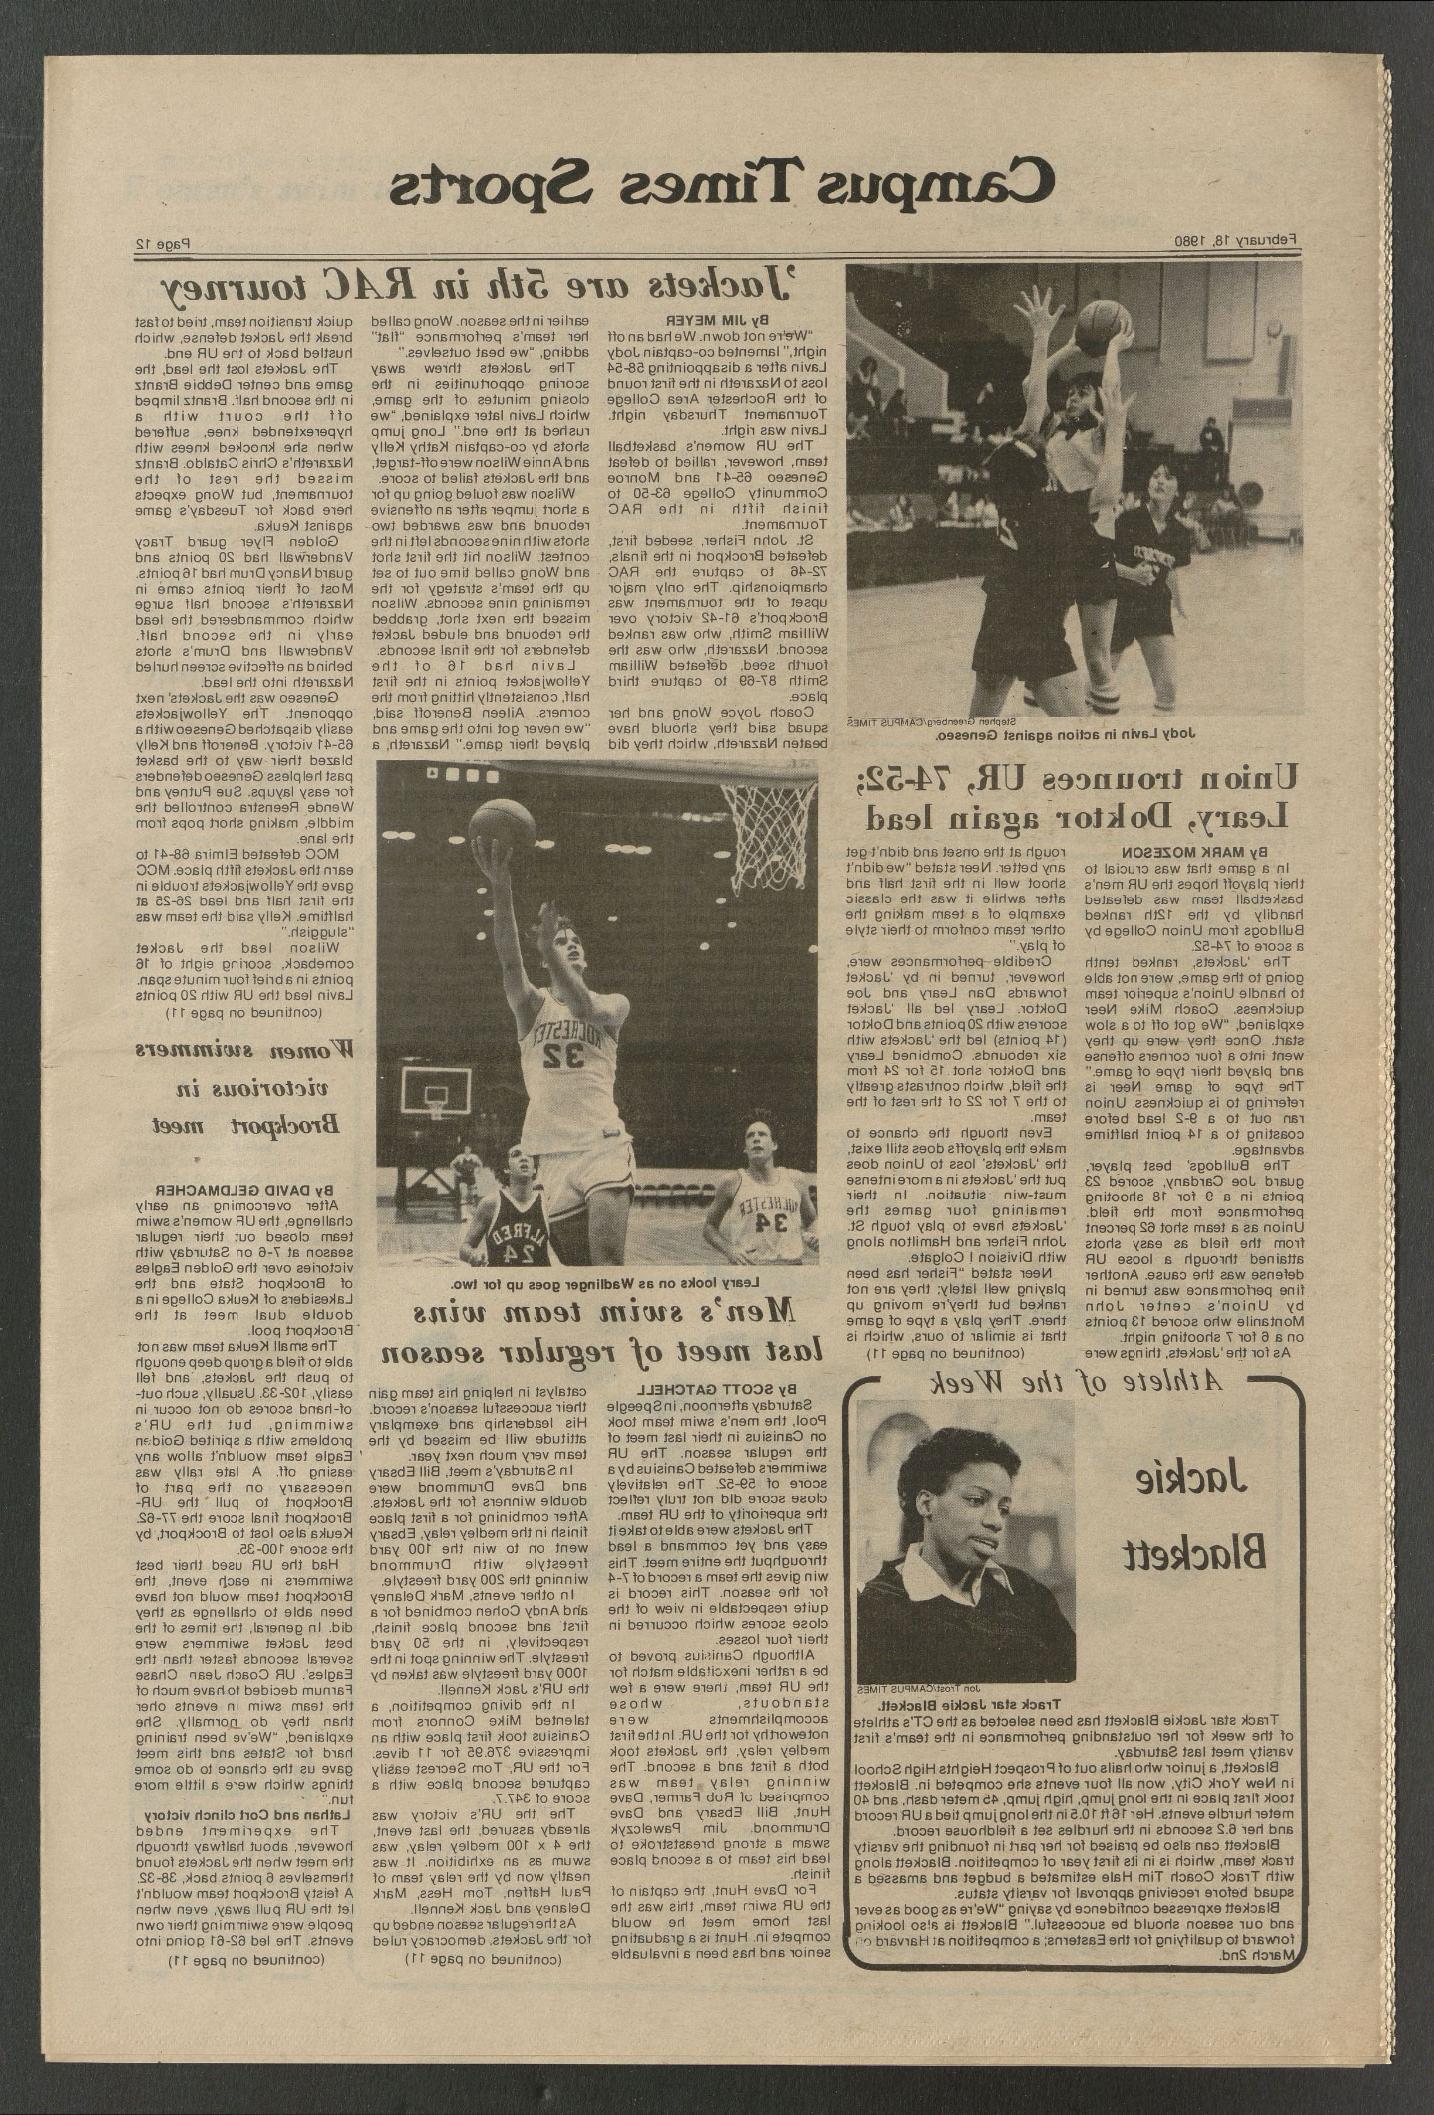 1980年2月18日，《校园时报》刊登了一篇关于杰基·布莱克特的文章.